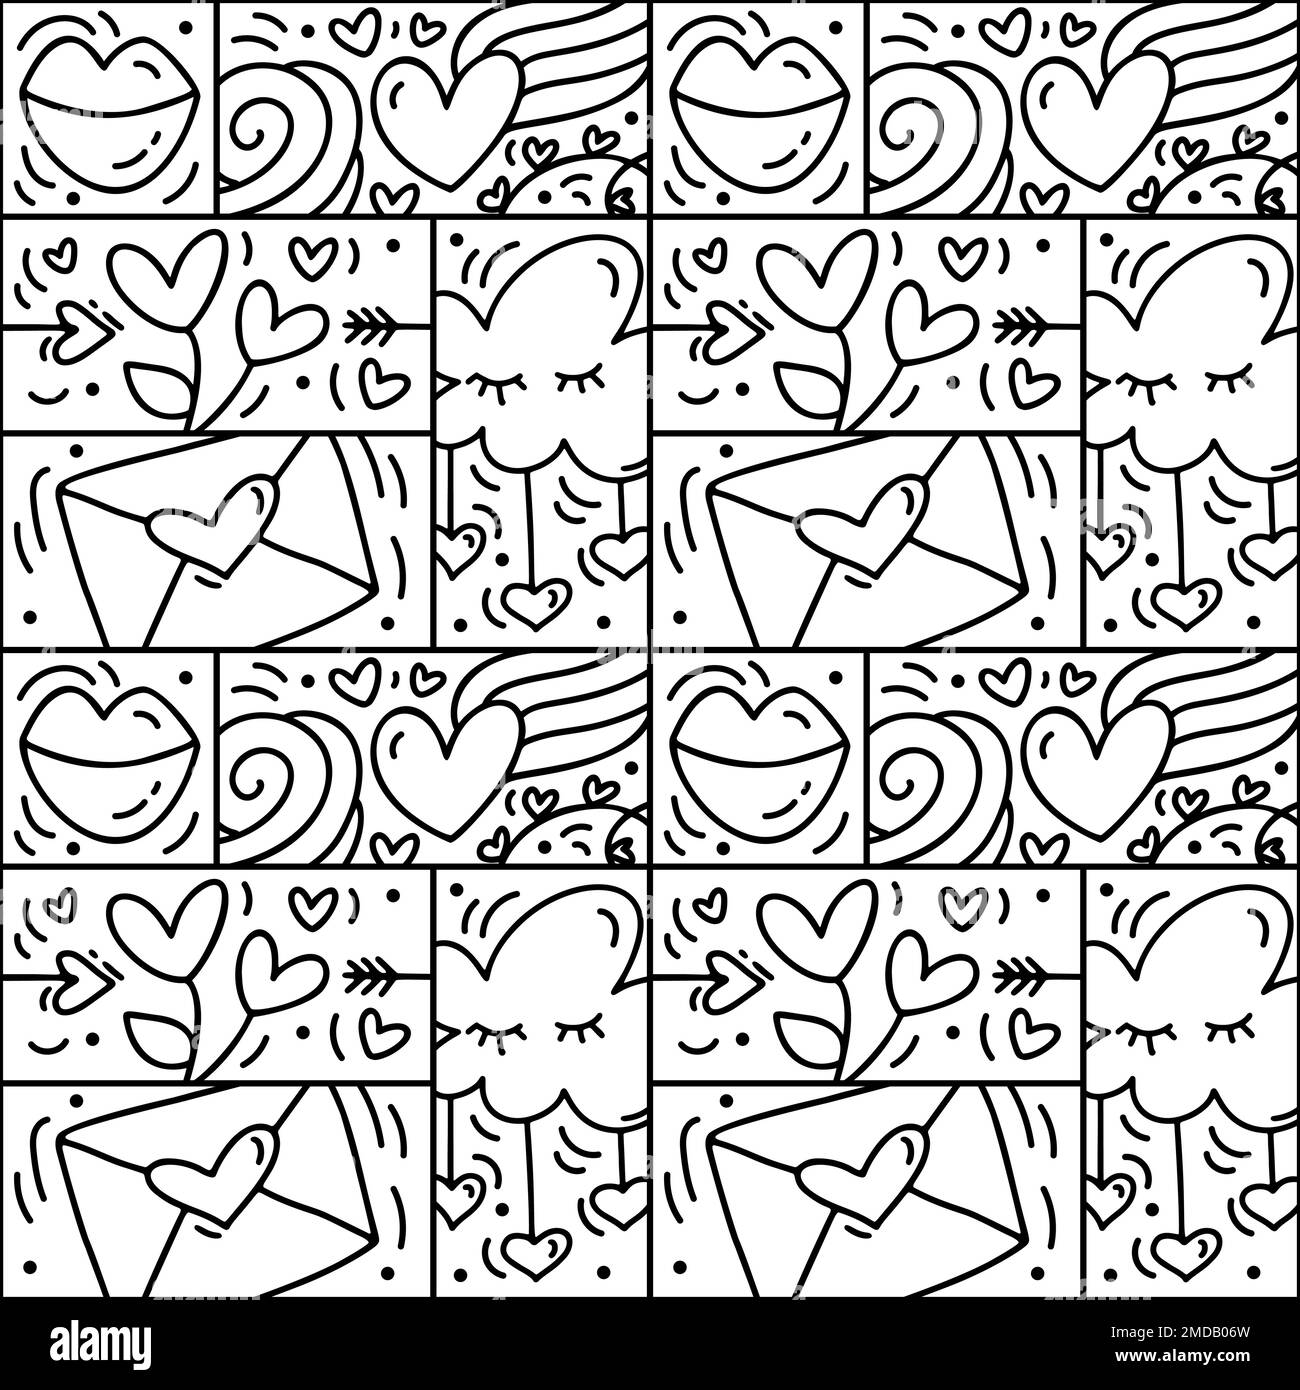 Vektor des Valentinslogo Nahtloses Muster Liebe, Lippen, Herz und Wolke. Handgezeichneter Monolin-Konstrukteur für eine romantische Grußkarte Stock Vektor